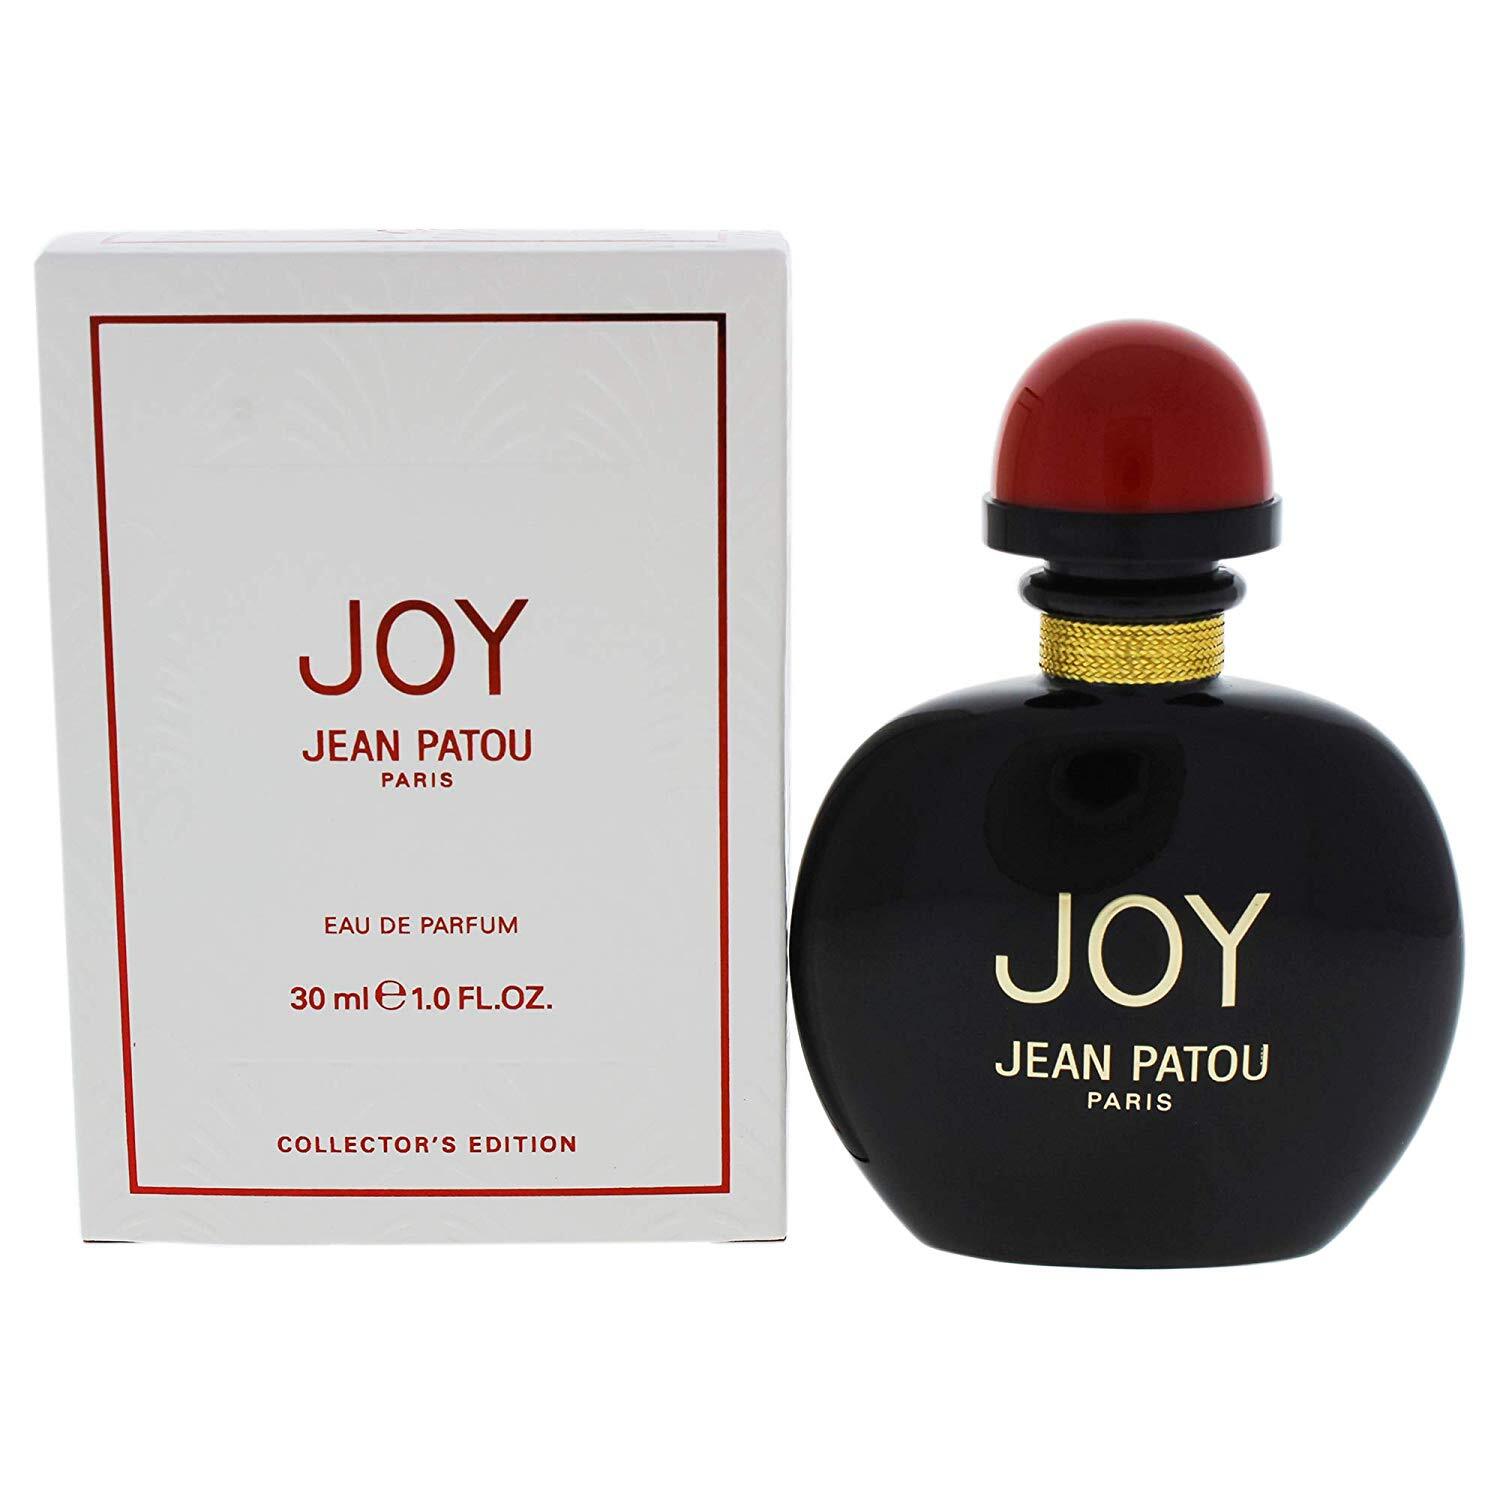 Joy by Jean Patou - Women’s Perfume - Perfumery